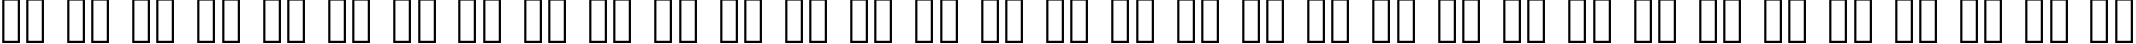 Пример написания русского алфавита шрифтом Glypha Regular